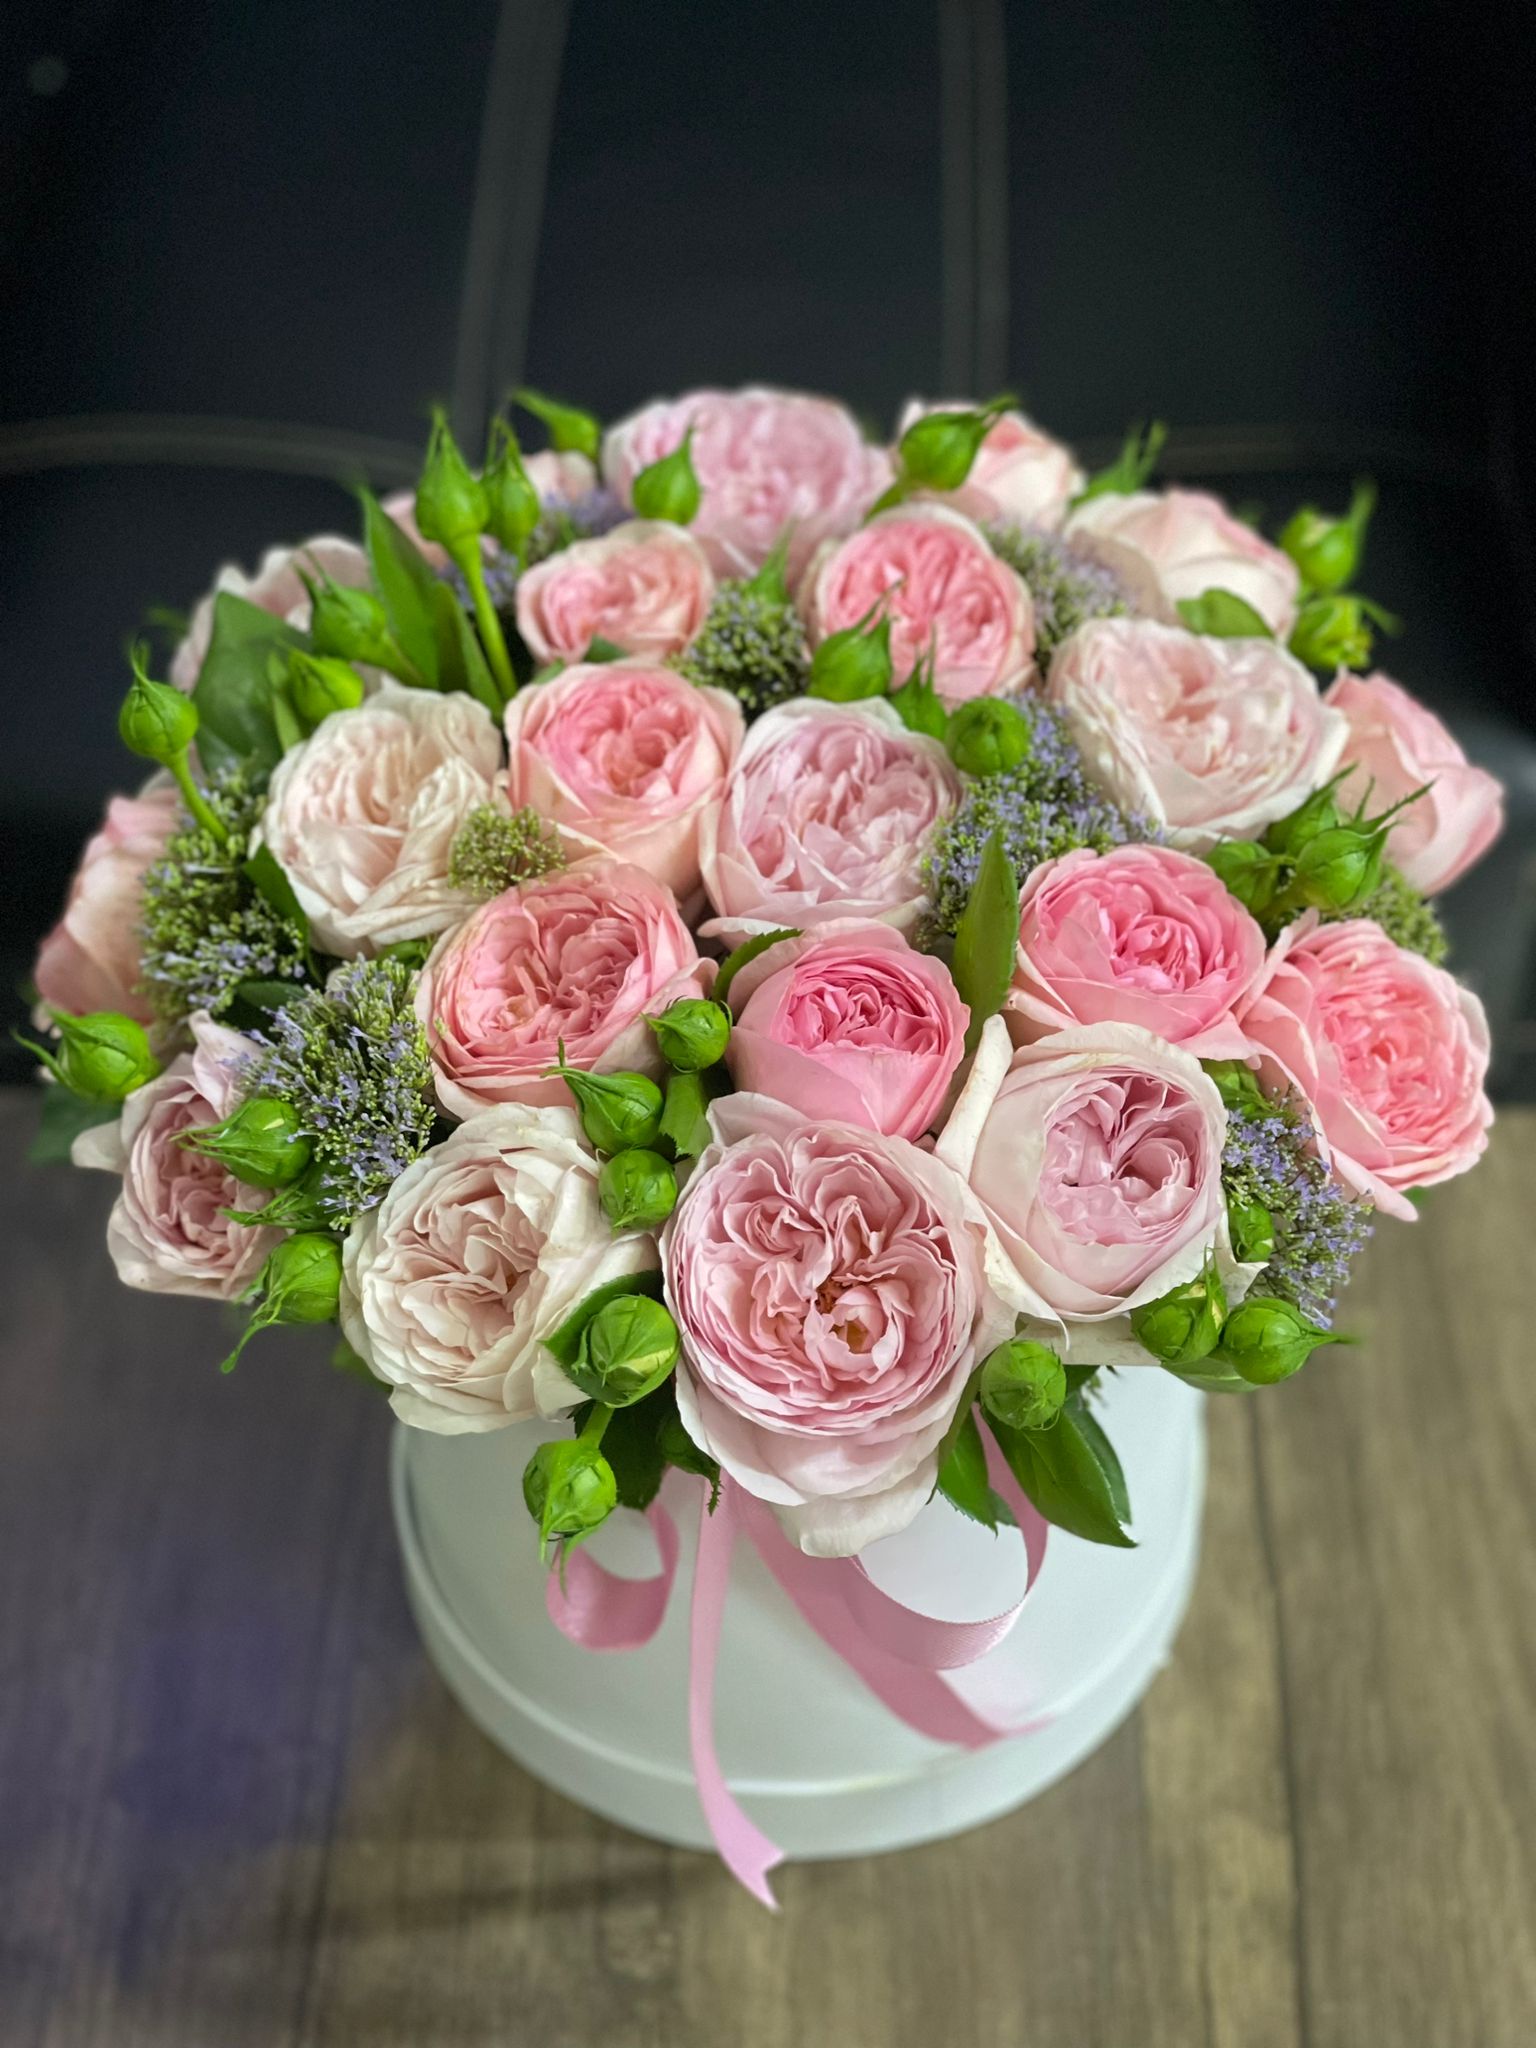  Kemer Blumenbestellung 21 Stück Pion-Rosen in einer weißen Box